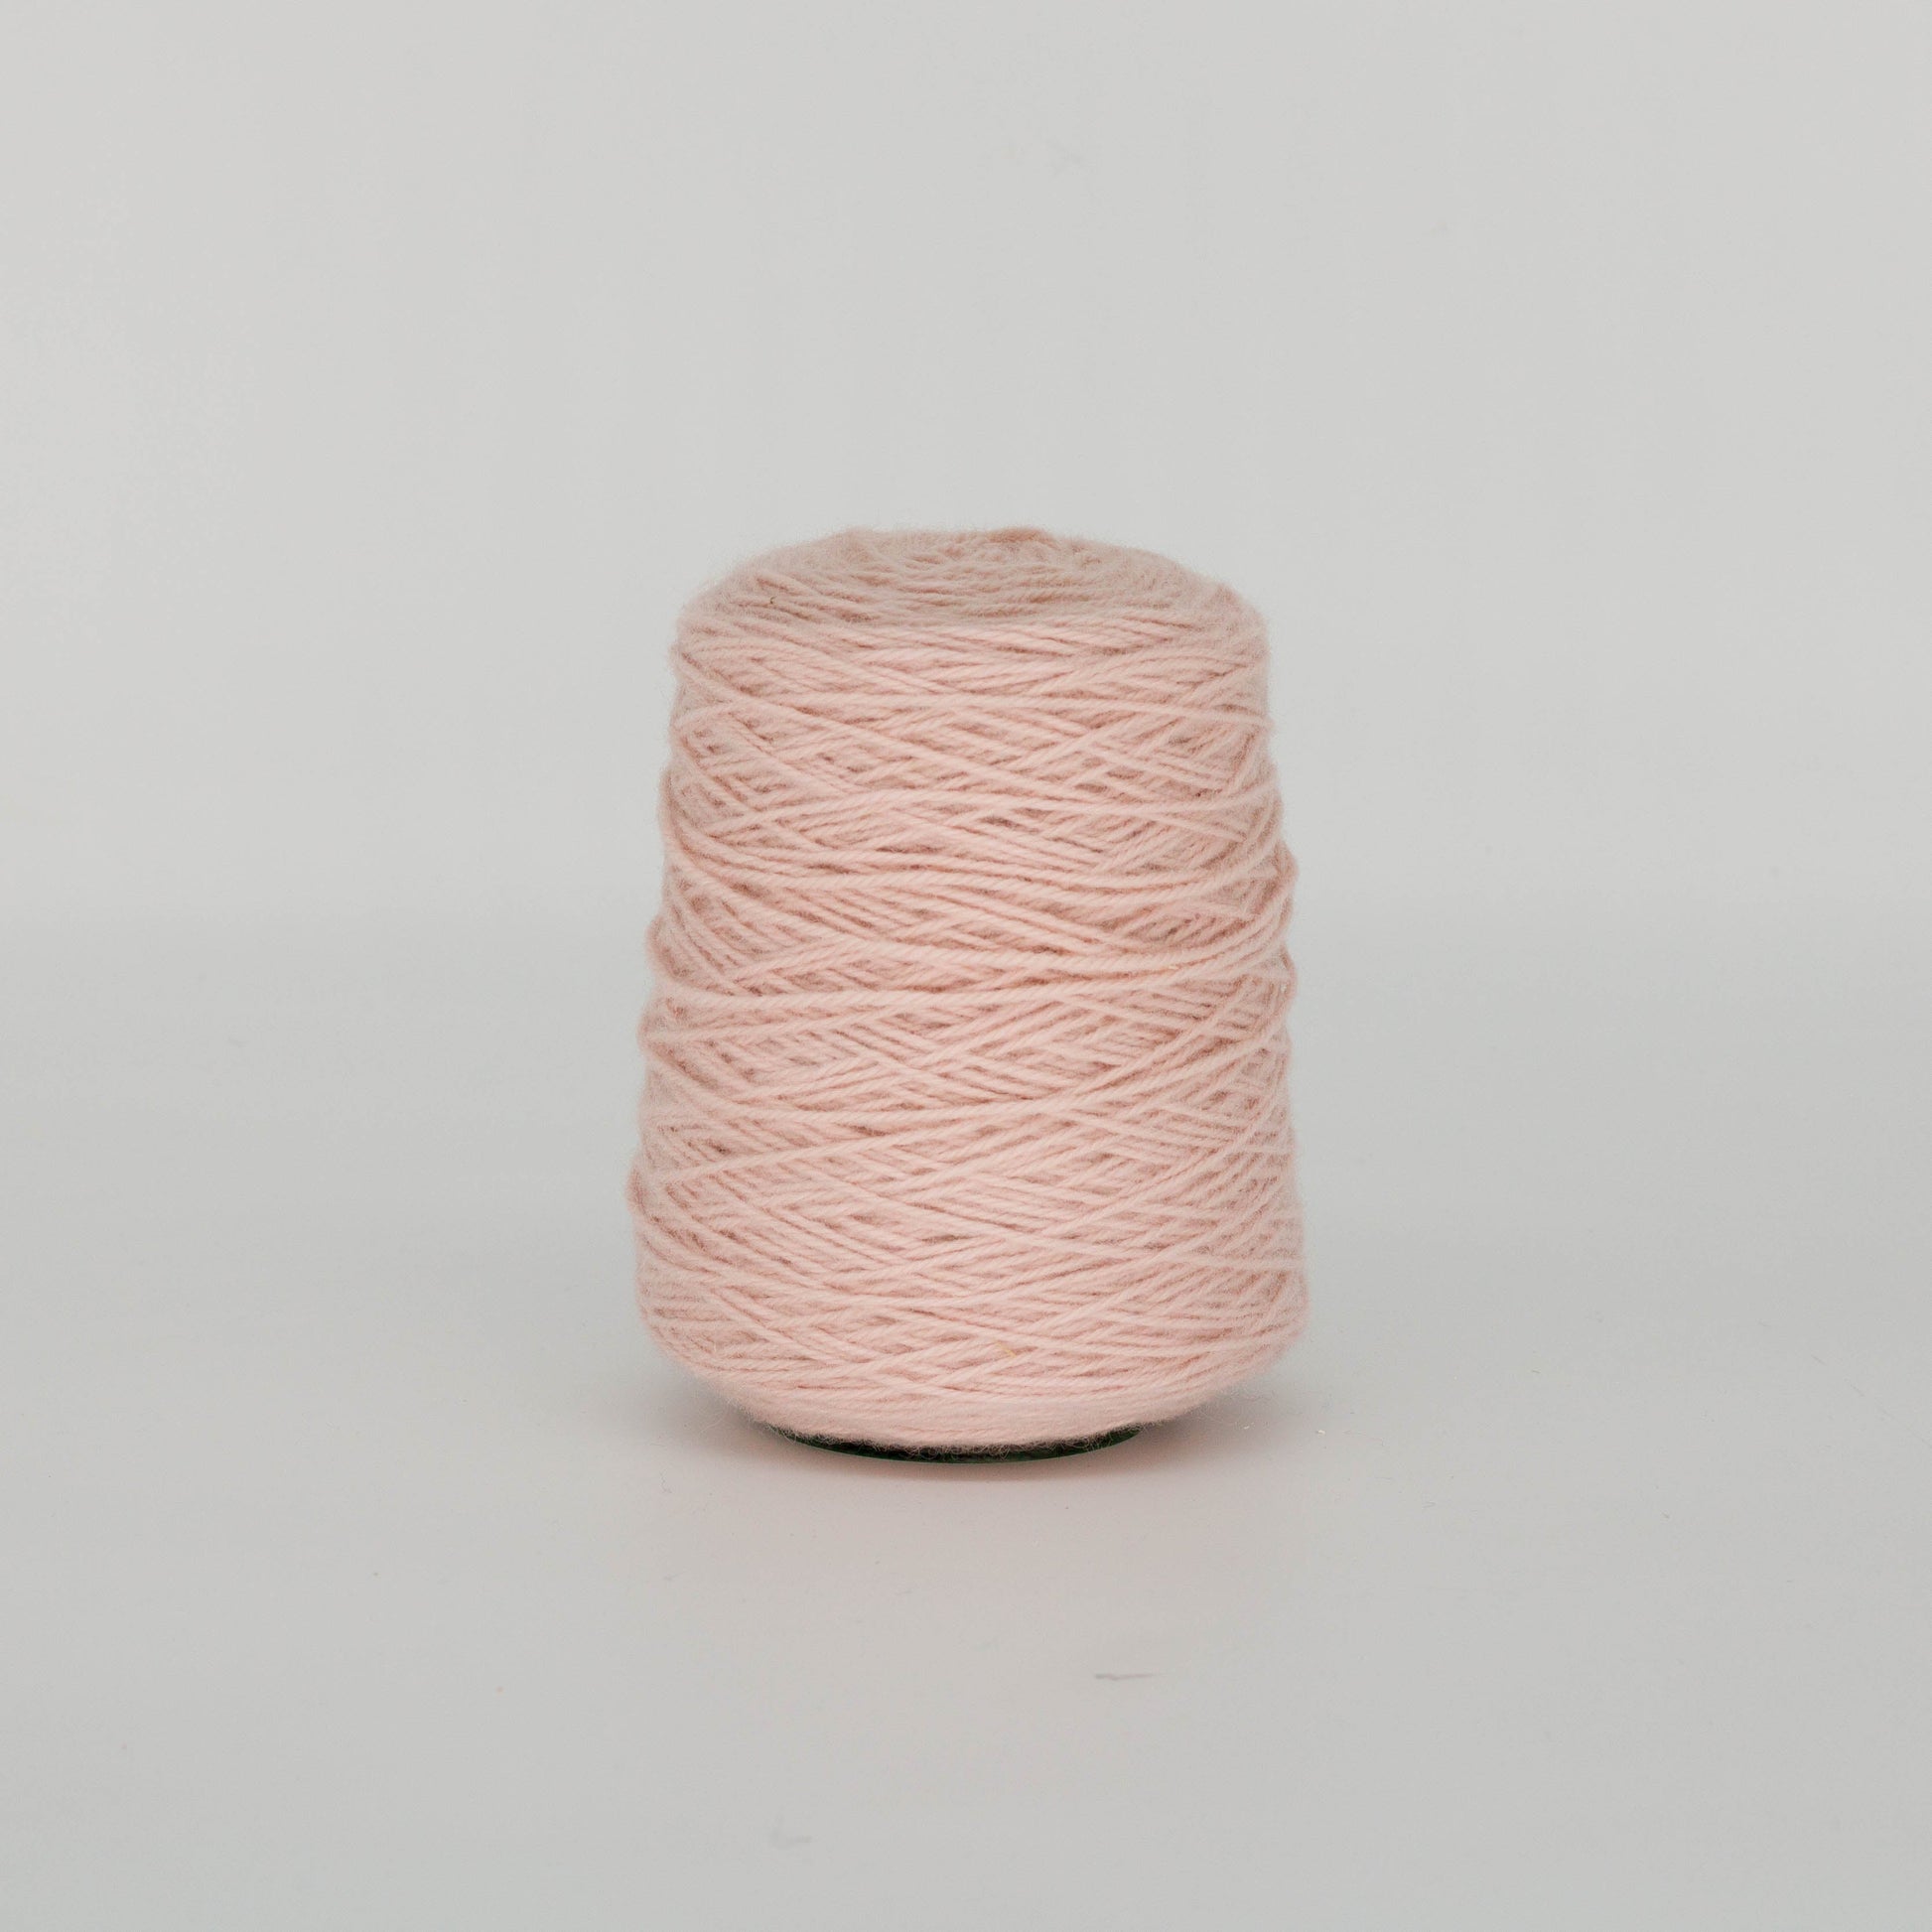 Pale ivory100% Wool Rug Yarn On Cones (499) - Tuftingshop